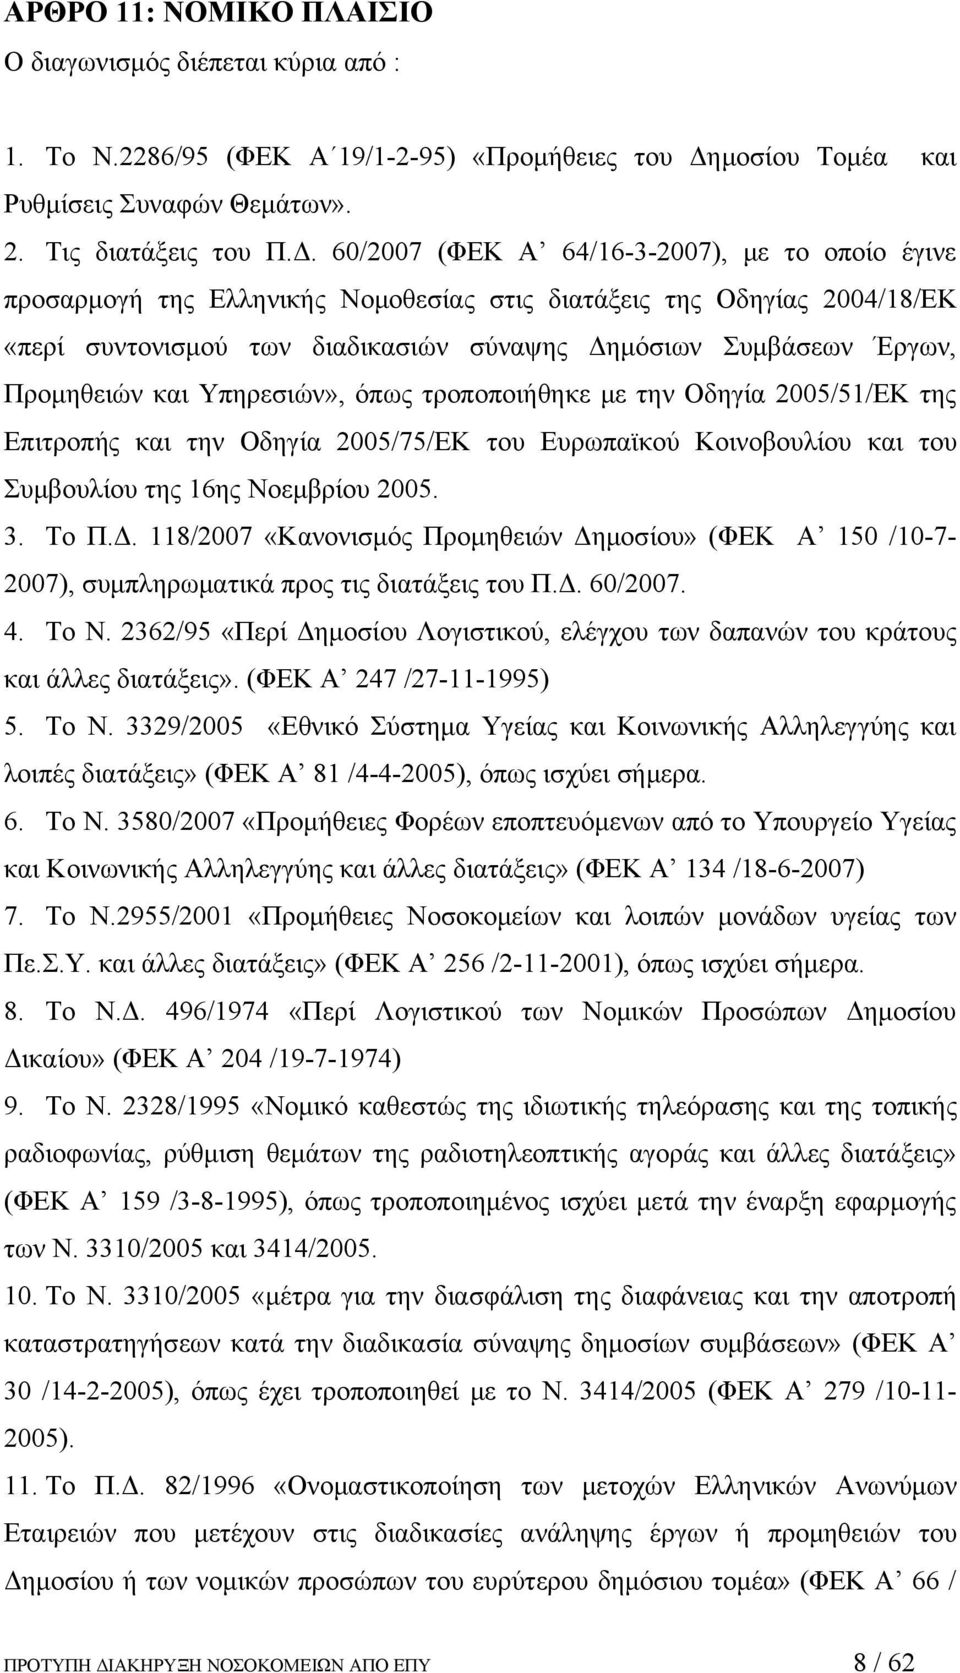 60/2007 (ΦΕΚ Α 64/16-3-2007), με το οποίο έγινε προσαρμογή της Ελληνικής Νομοθεσίας στις διατάξεις της Οδηγίας 2004/18/ΕΚ «περί συντονισμού των διαδικασιών σύναψης Δημόσιων Συμβάσεων Έργων,